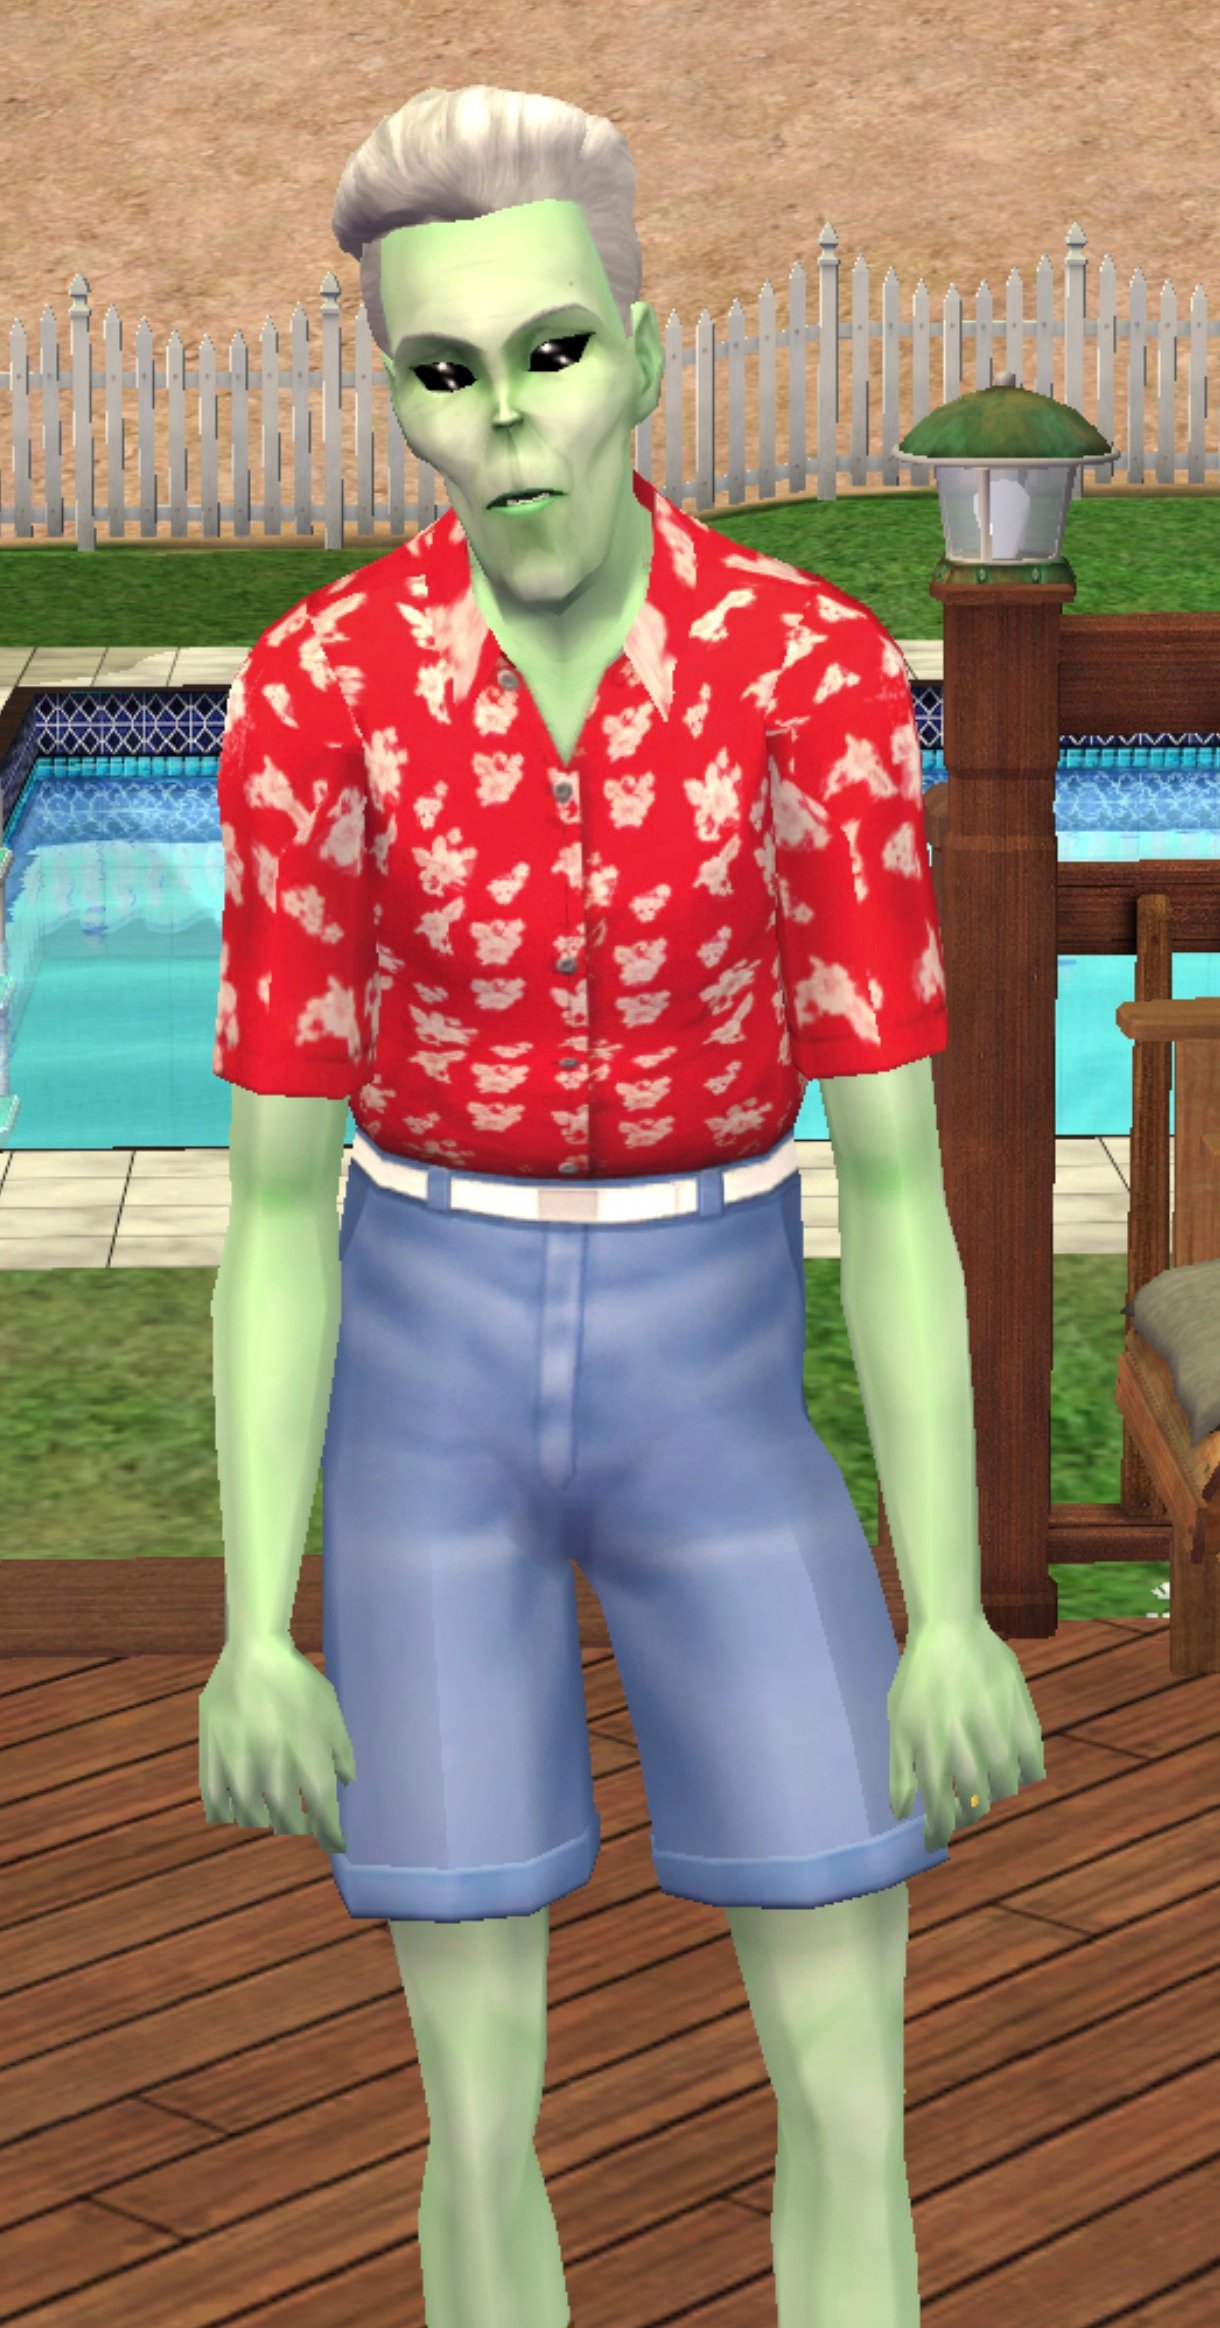 Les aliens des Sims 2